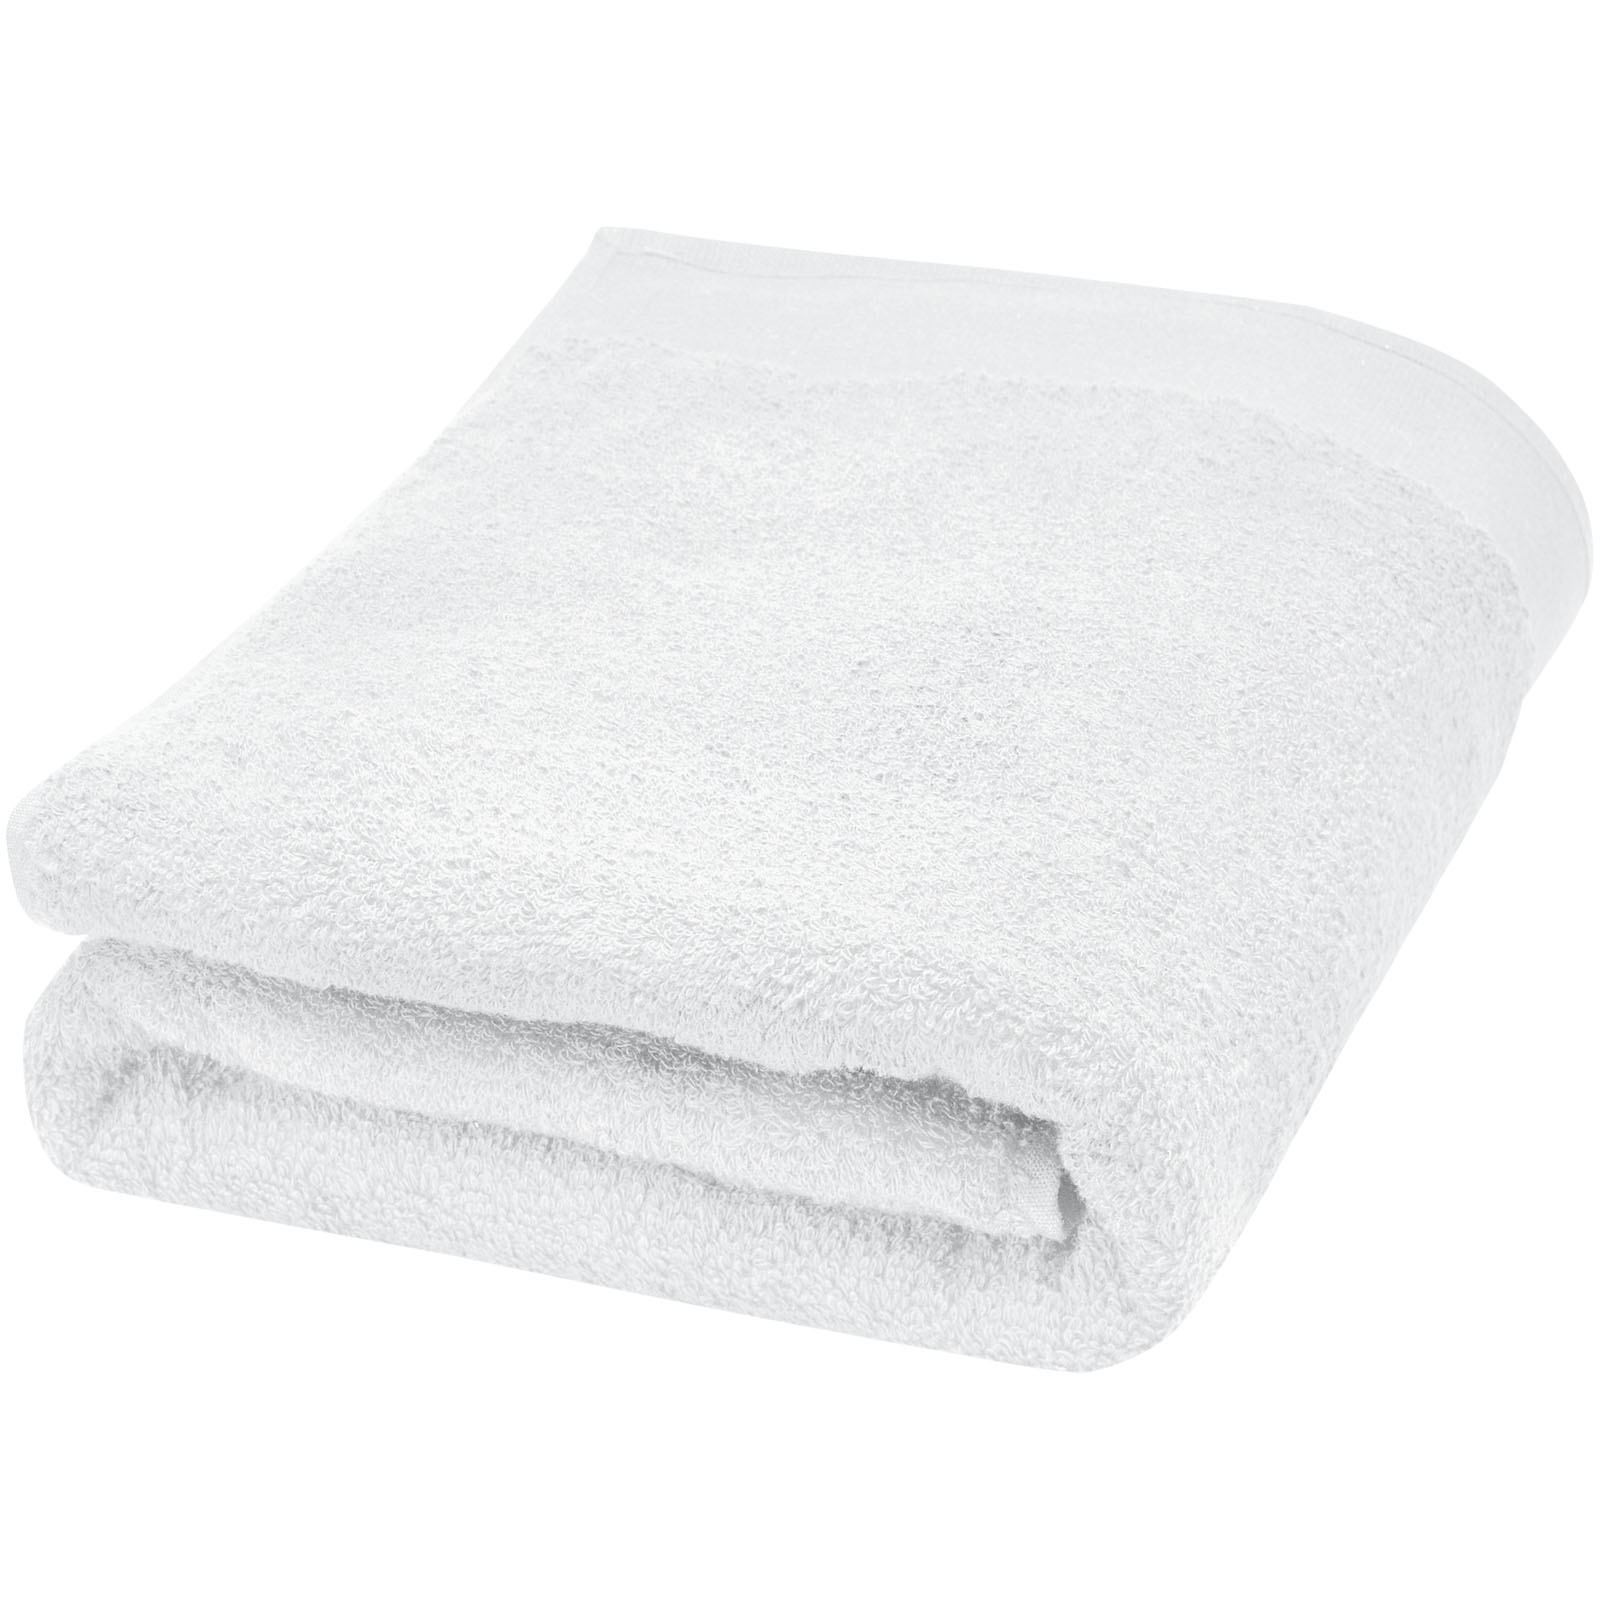 Health & Personal Care - Ellie 550 g/m² cotton towel 70x140 cm